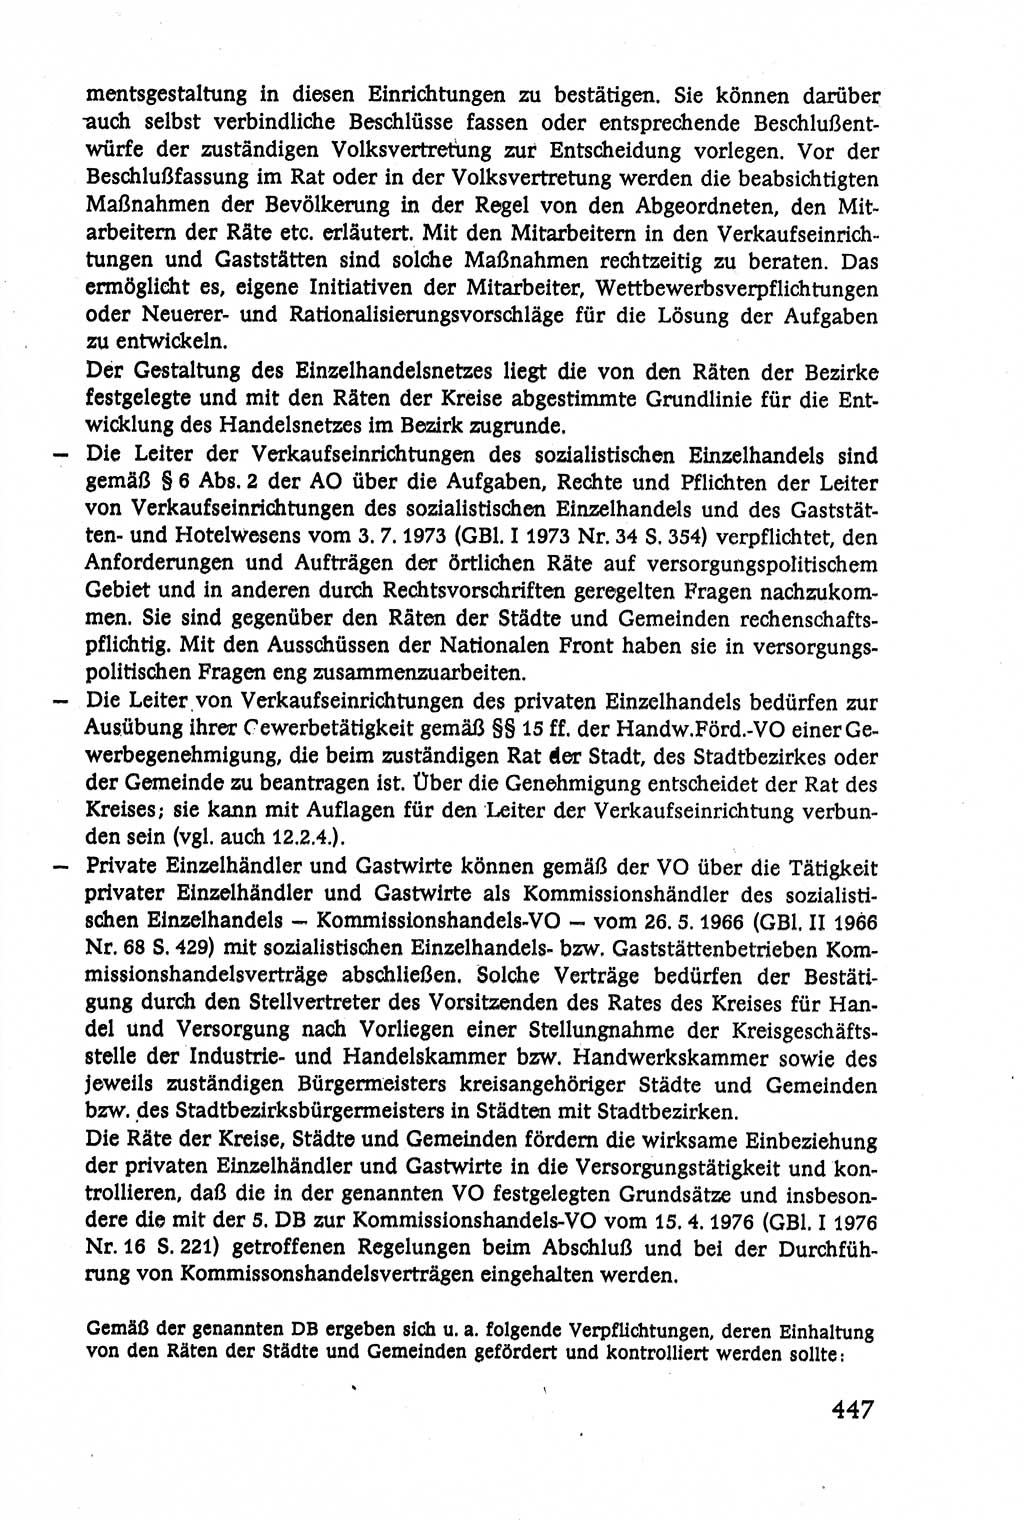 Verwaltungsrecht [Deutsche Demokratische Republik (DDR)], Lehrbuch 1979, Seite 447 (Verw.-R. DDR Lb. 1979, S. 447)